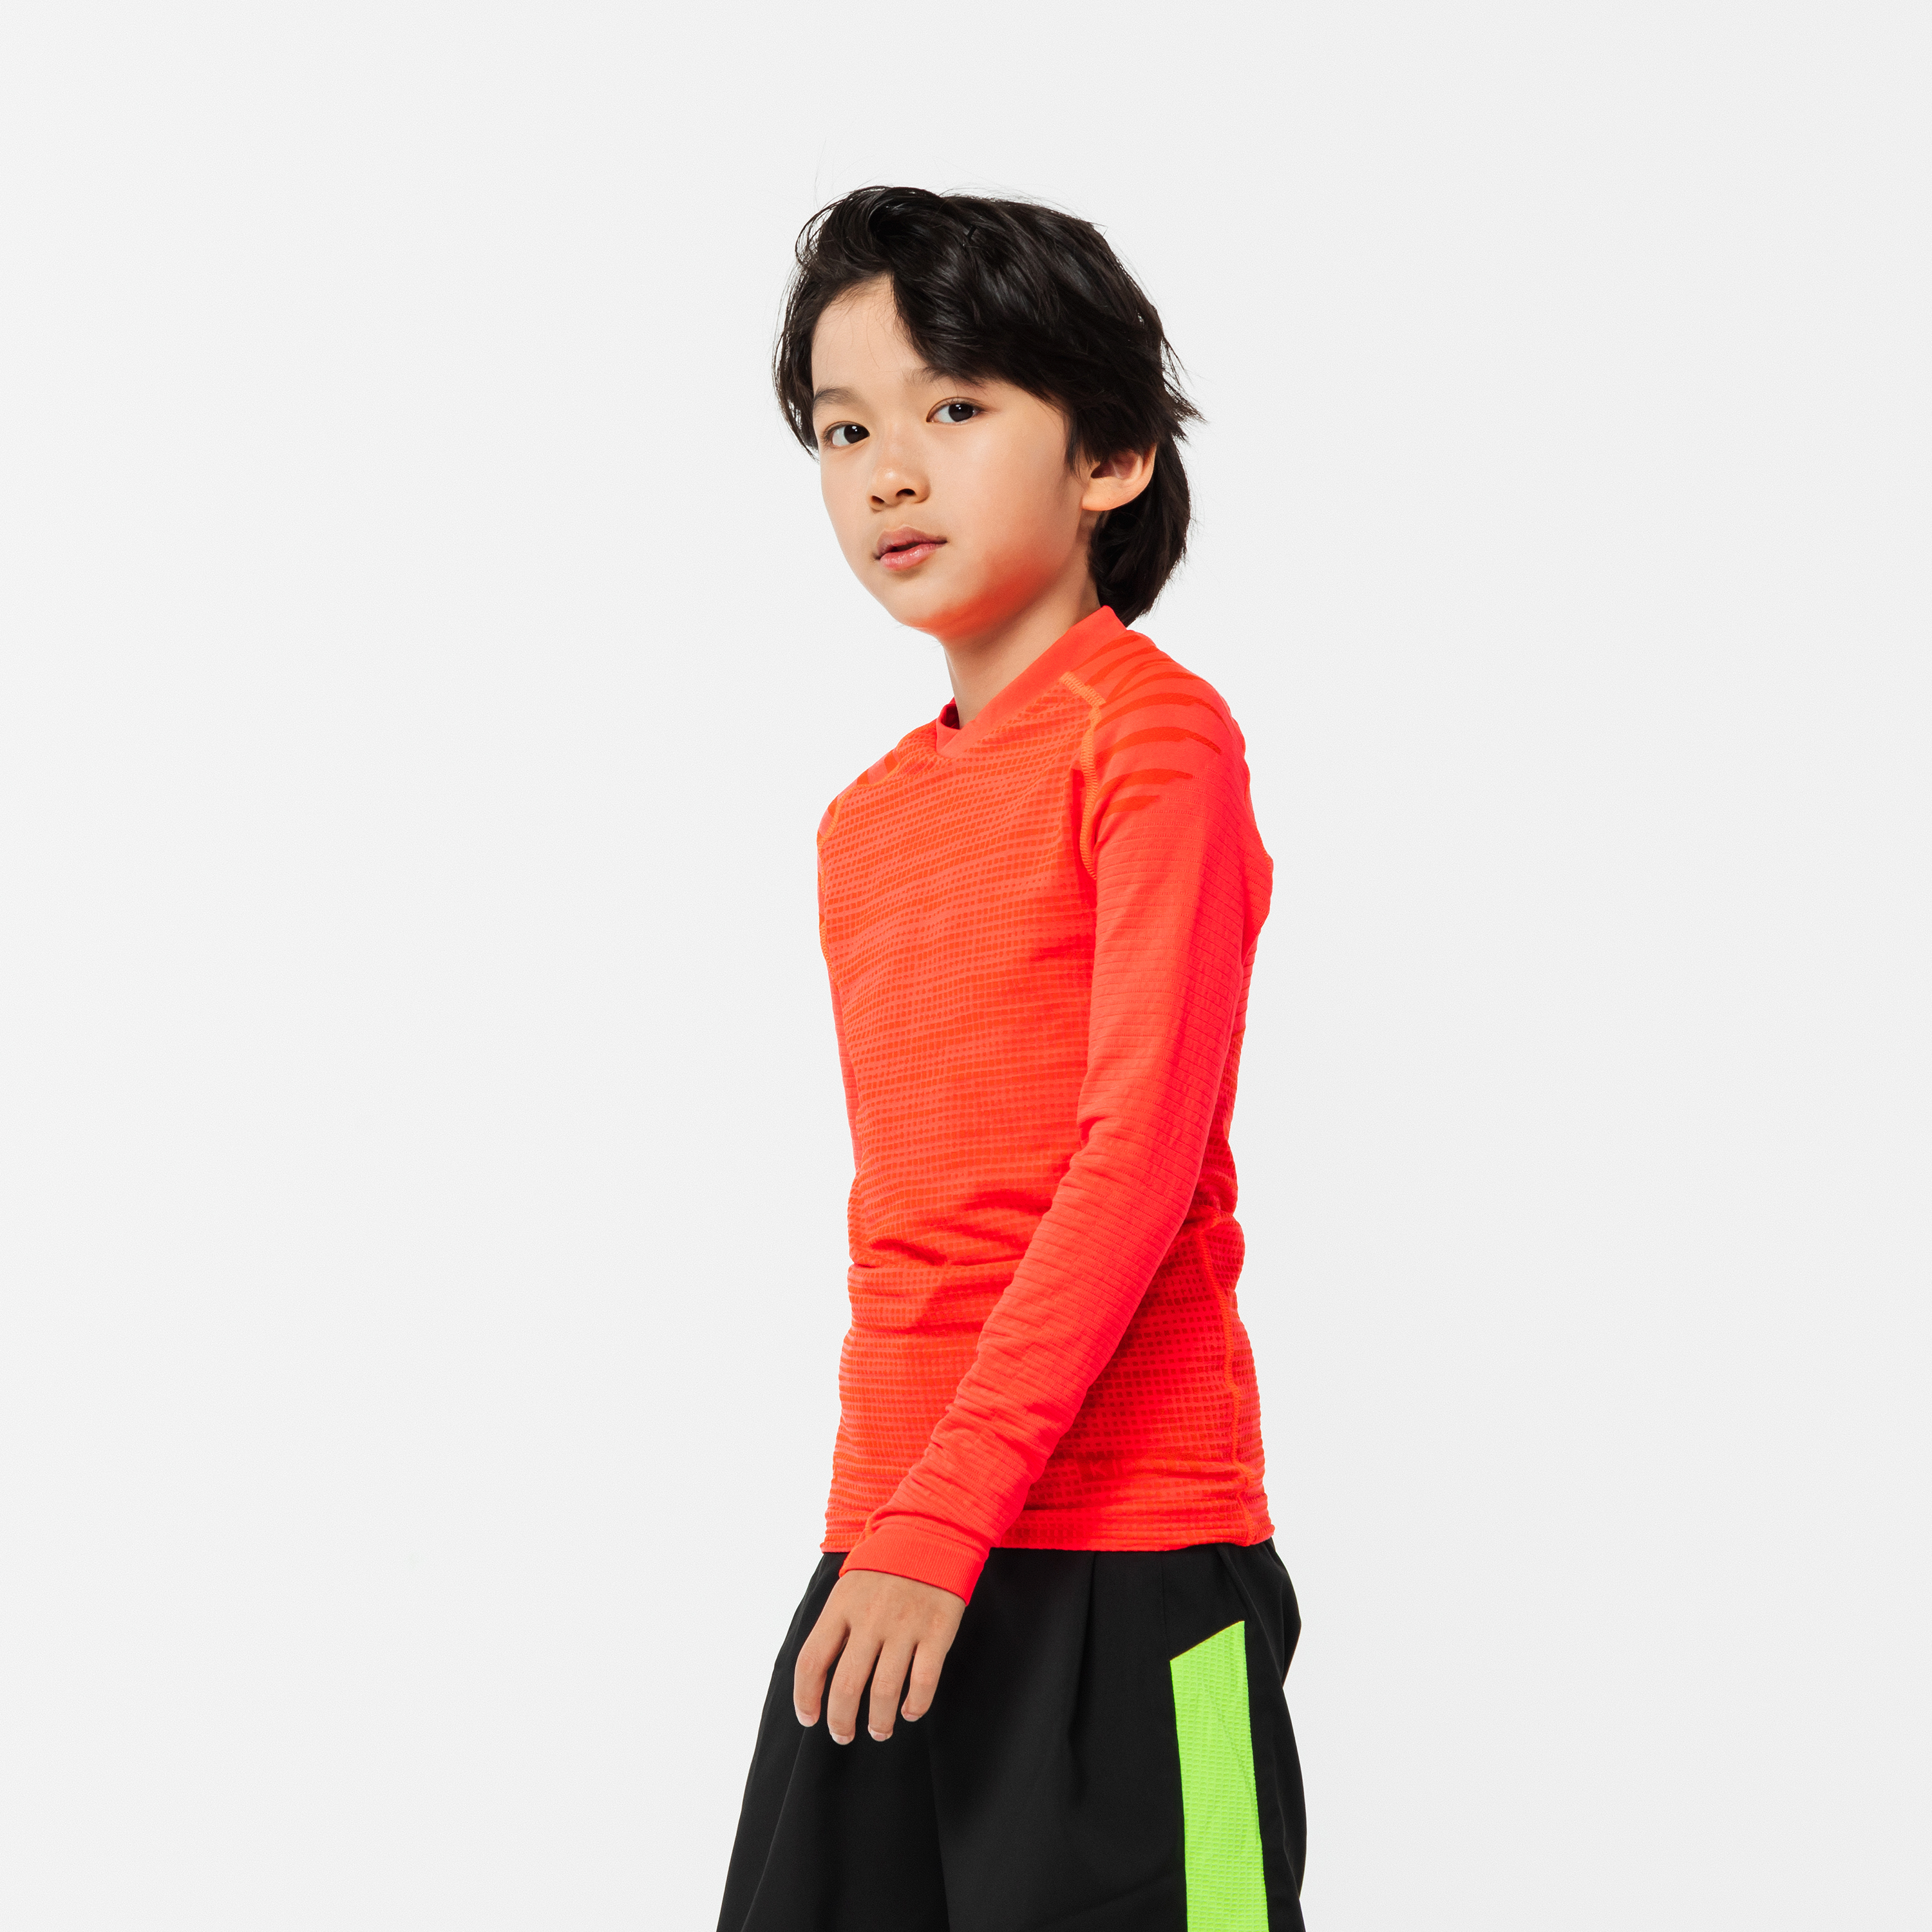 Sportful Kid's Td Mid Long Sleeve Top - Sous-vêtement thermique